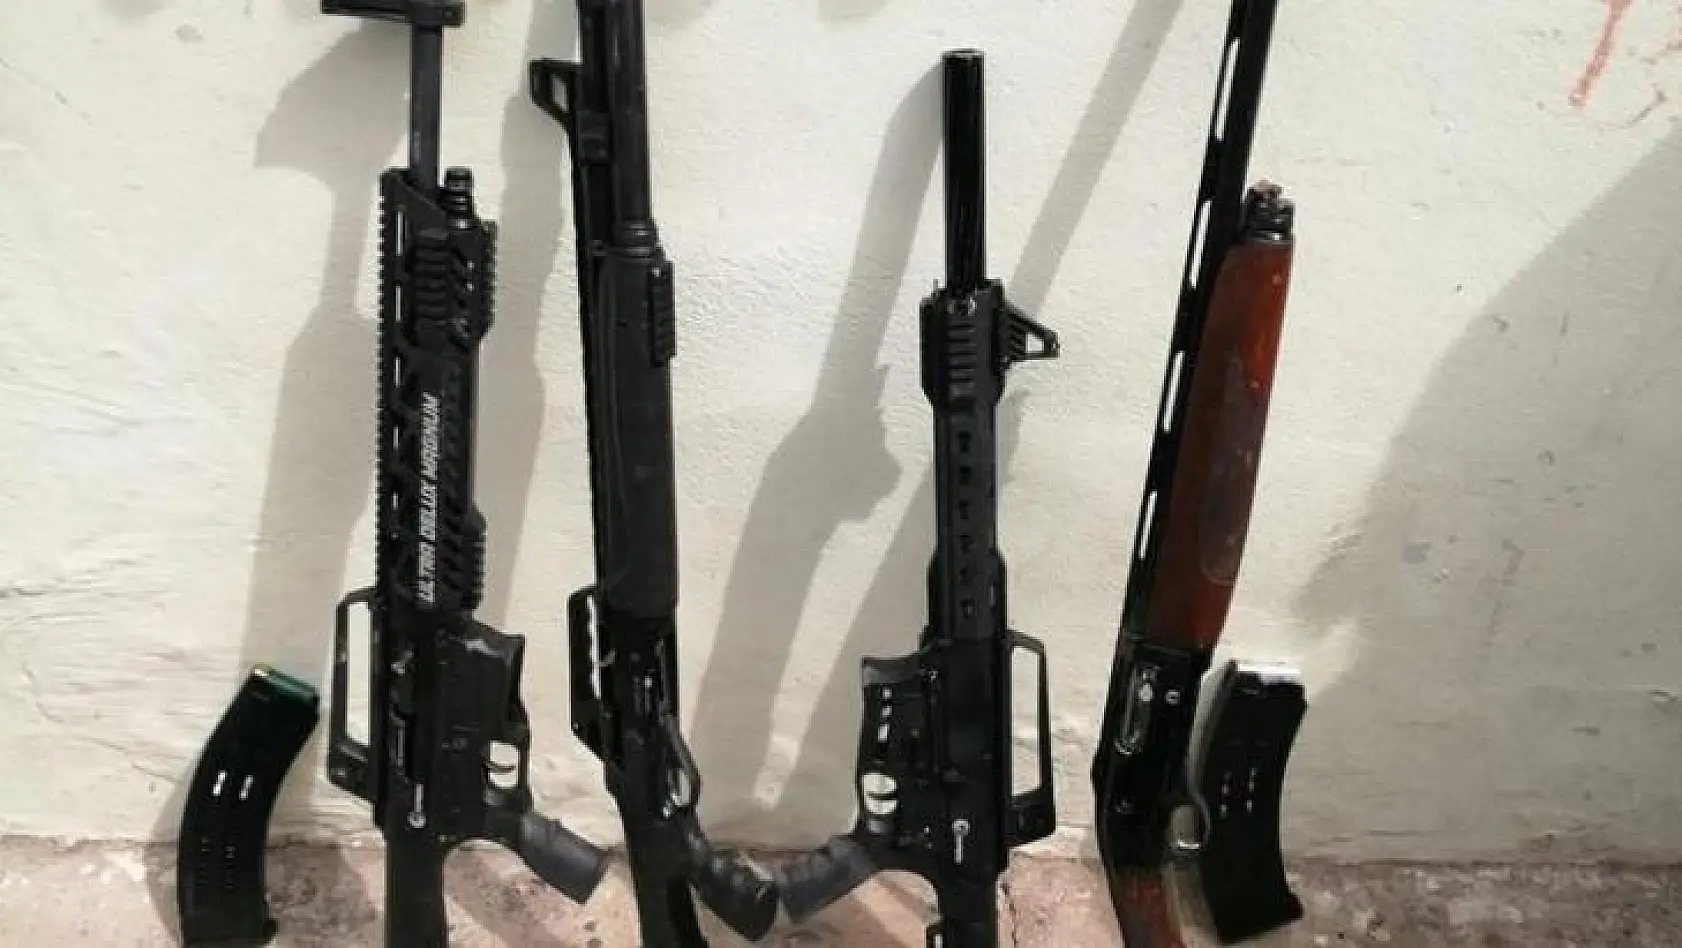 İzmir'de bir evin bahçesinde 4 av tüfeği ele geçirildi